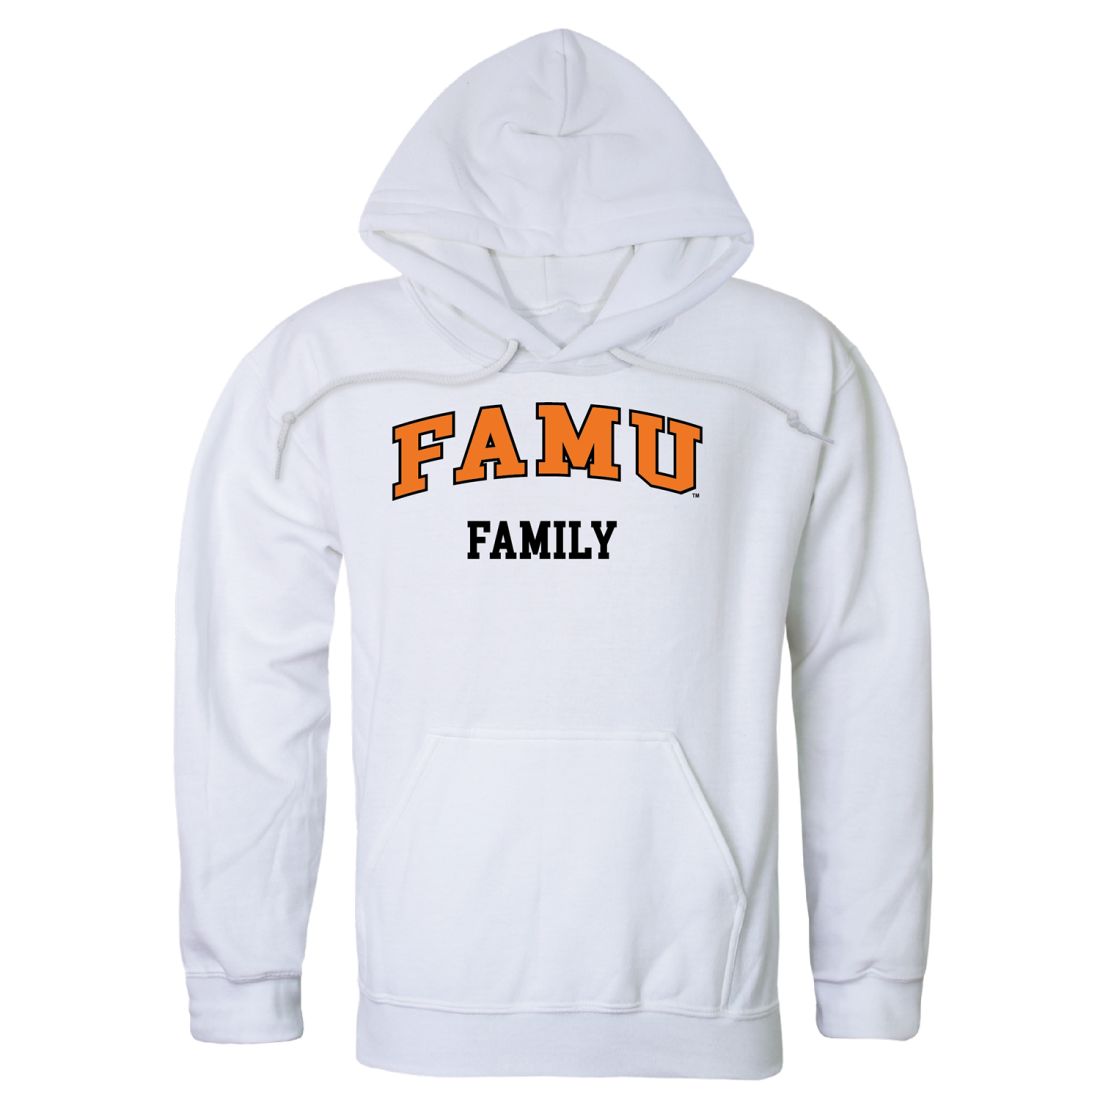 FAMU Florida A&M University Rattlers Family Hoodie Sweatshirts